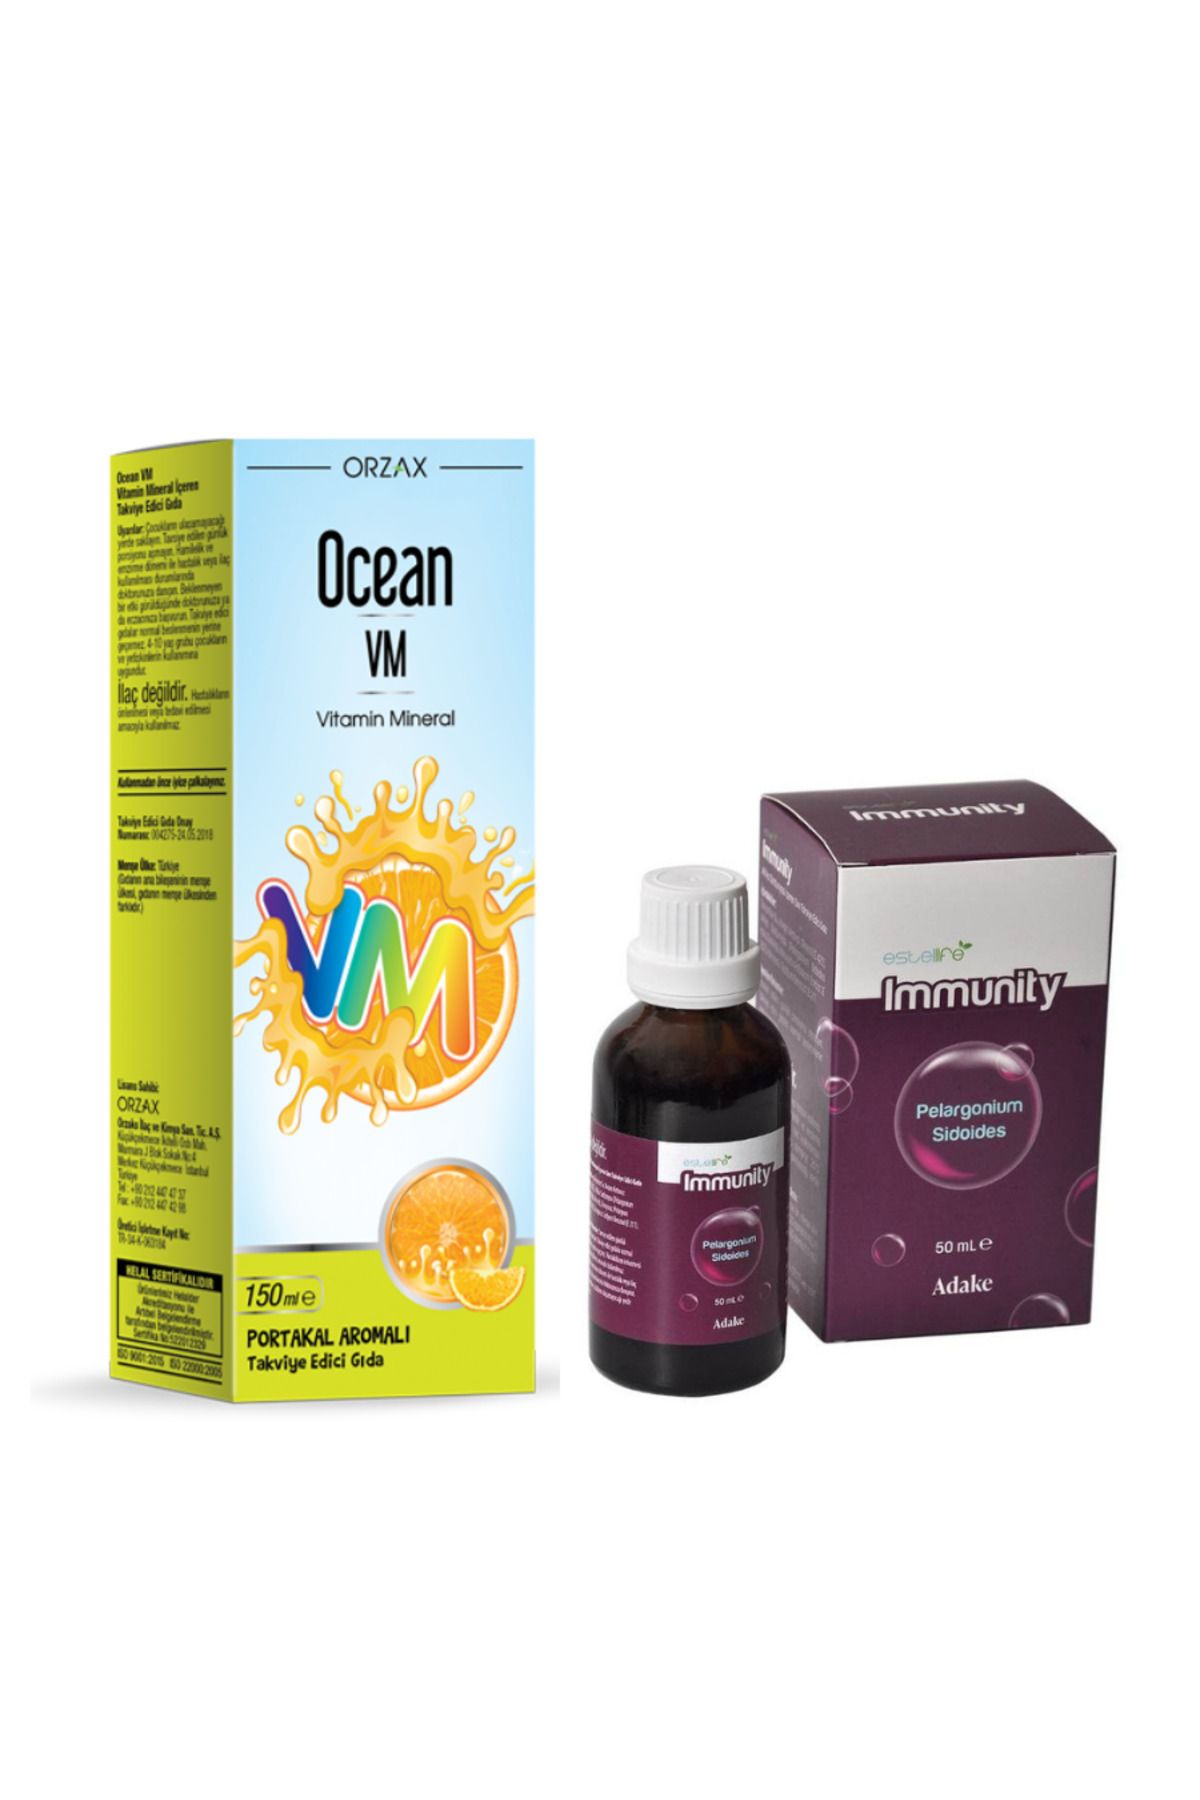 Ocean VM Vitamin Mineral Şurup 150 ml-Immunity Bağışıklık Güçlendirici 50 ml